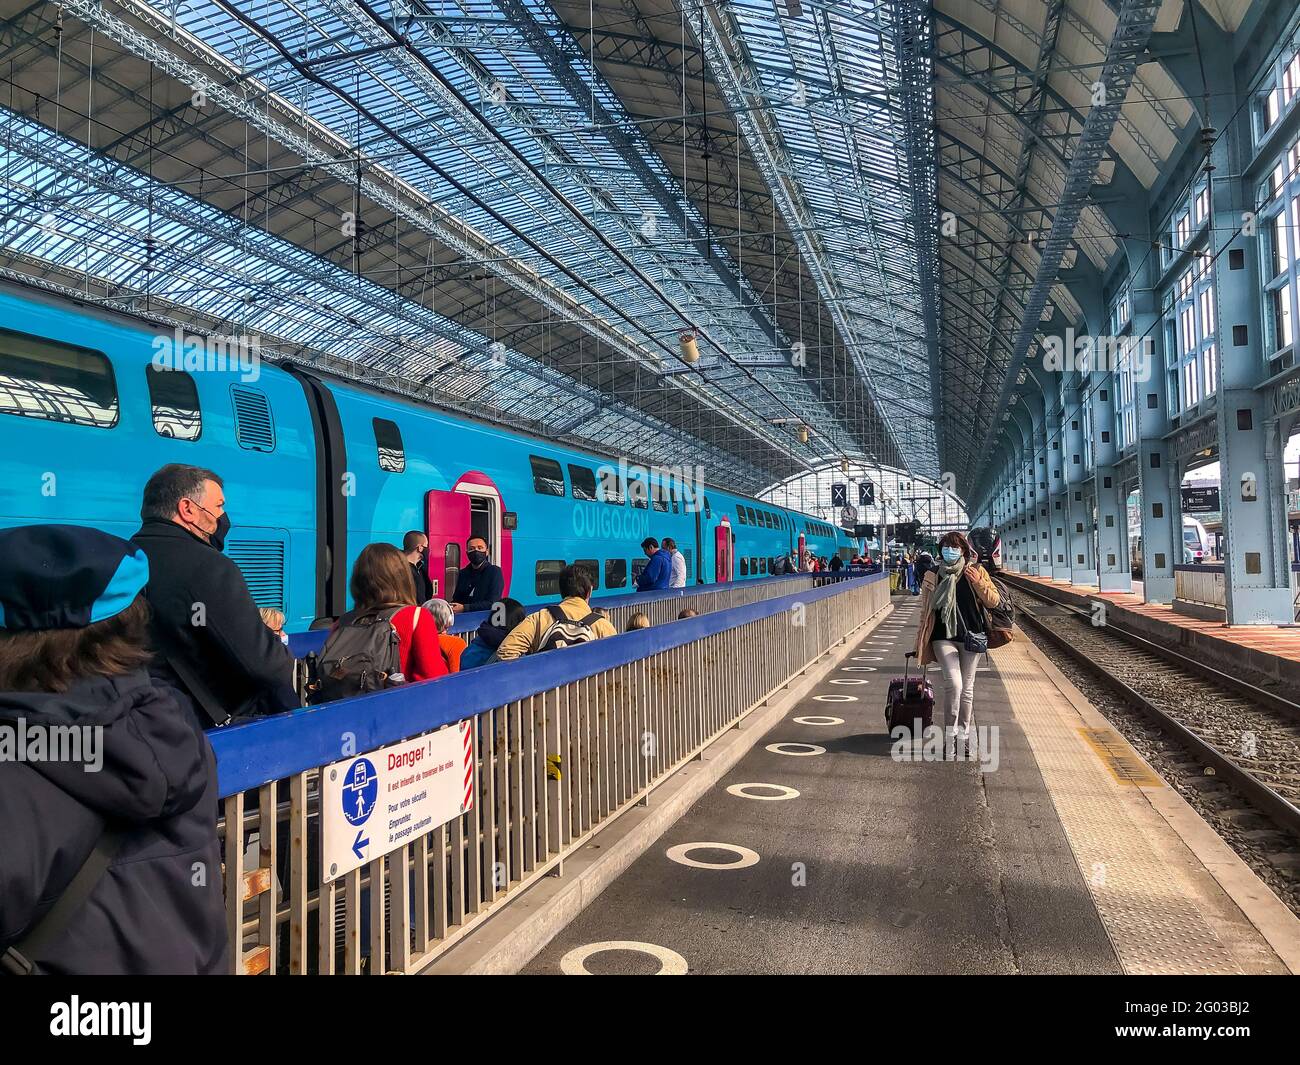 Bordeaux, France, gare TGV historique, plateforme passagers embarquement  train Ouigo, gare de bordeaux St jean Photo Stock - Alamy